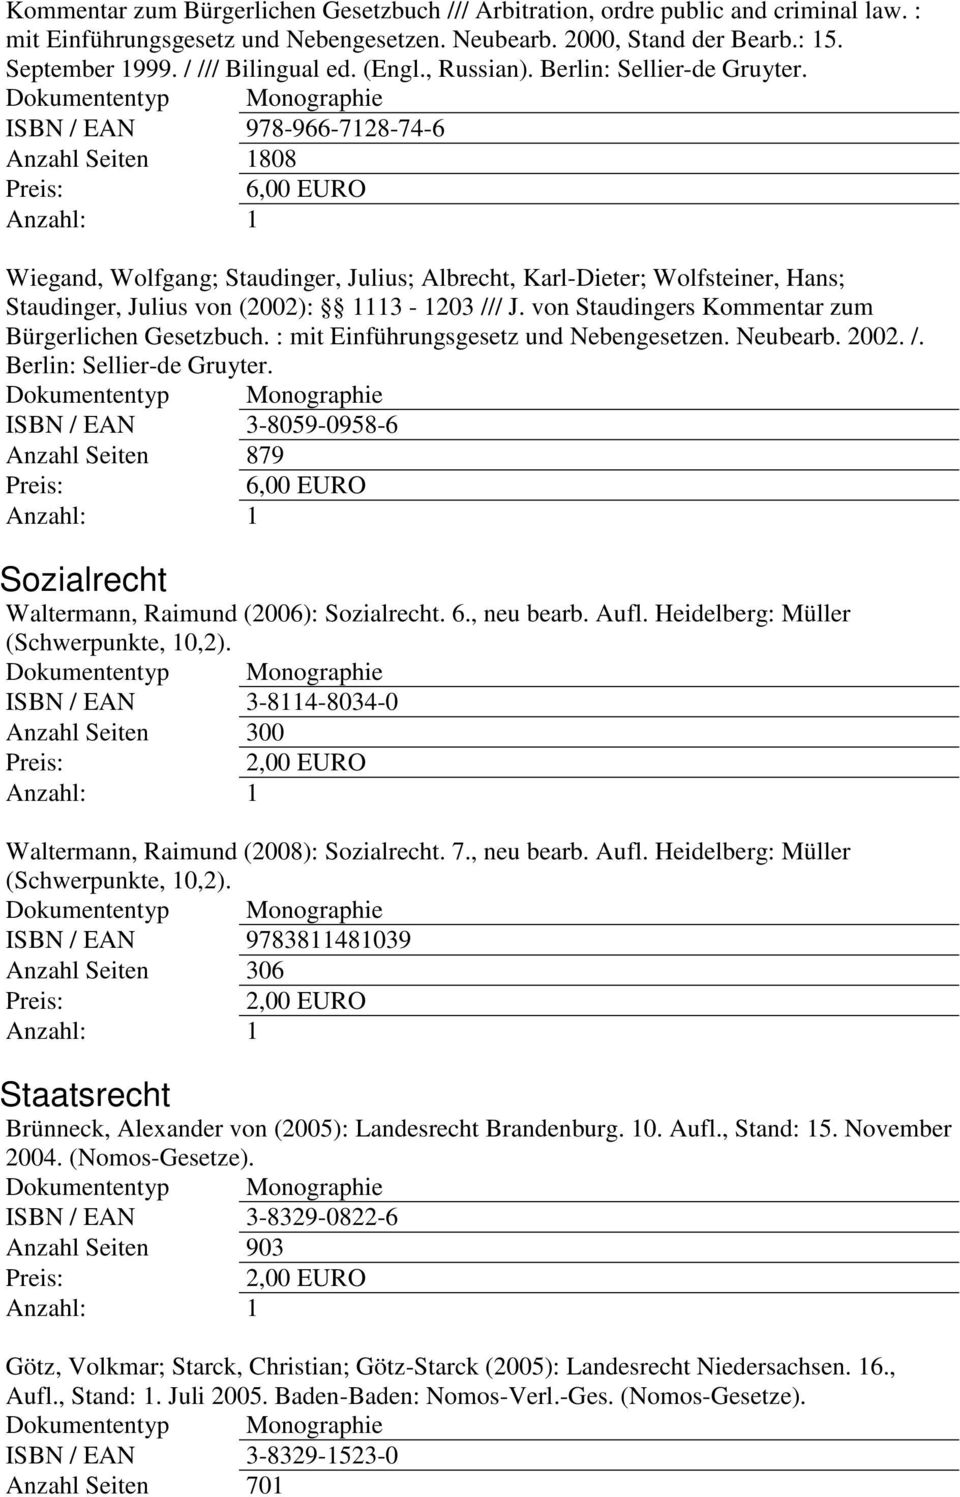 ISBN / EAN 978-966-7128-74-6 Anzahl Seiten 1808 Wiegand, Wolfgang; Staudinger, Julius; Albrecht, Karl-Dieter; Wolfsteiner, Hans; Staudinger, Julius von (2002): 1113-1203 /// J.